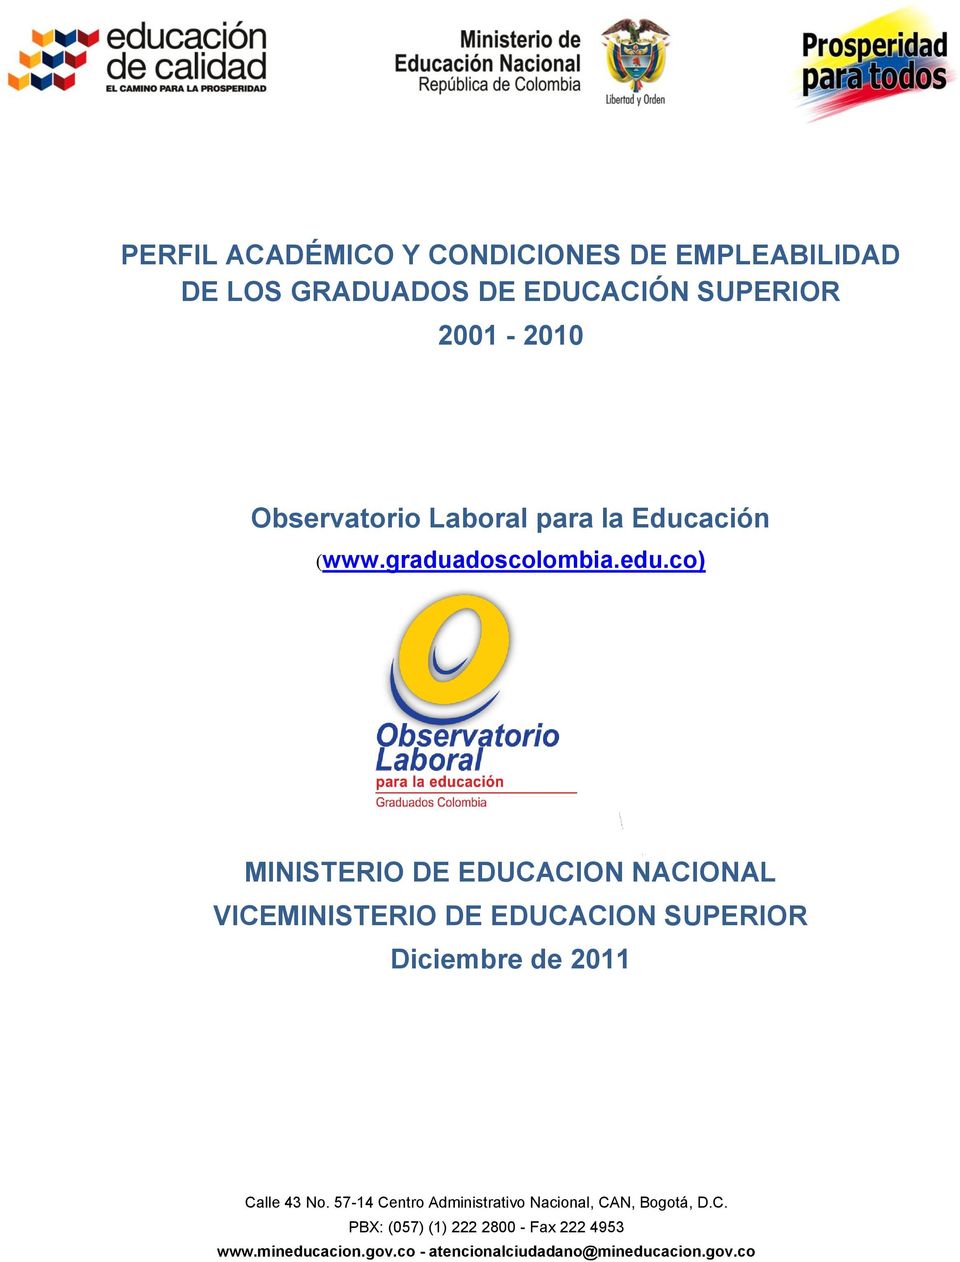 para la Educación (www.graduadoscolombia.edu.